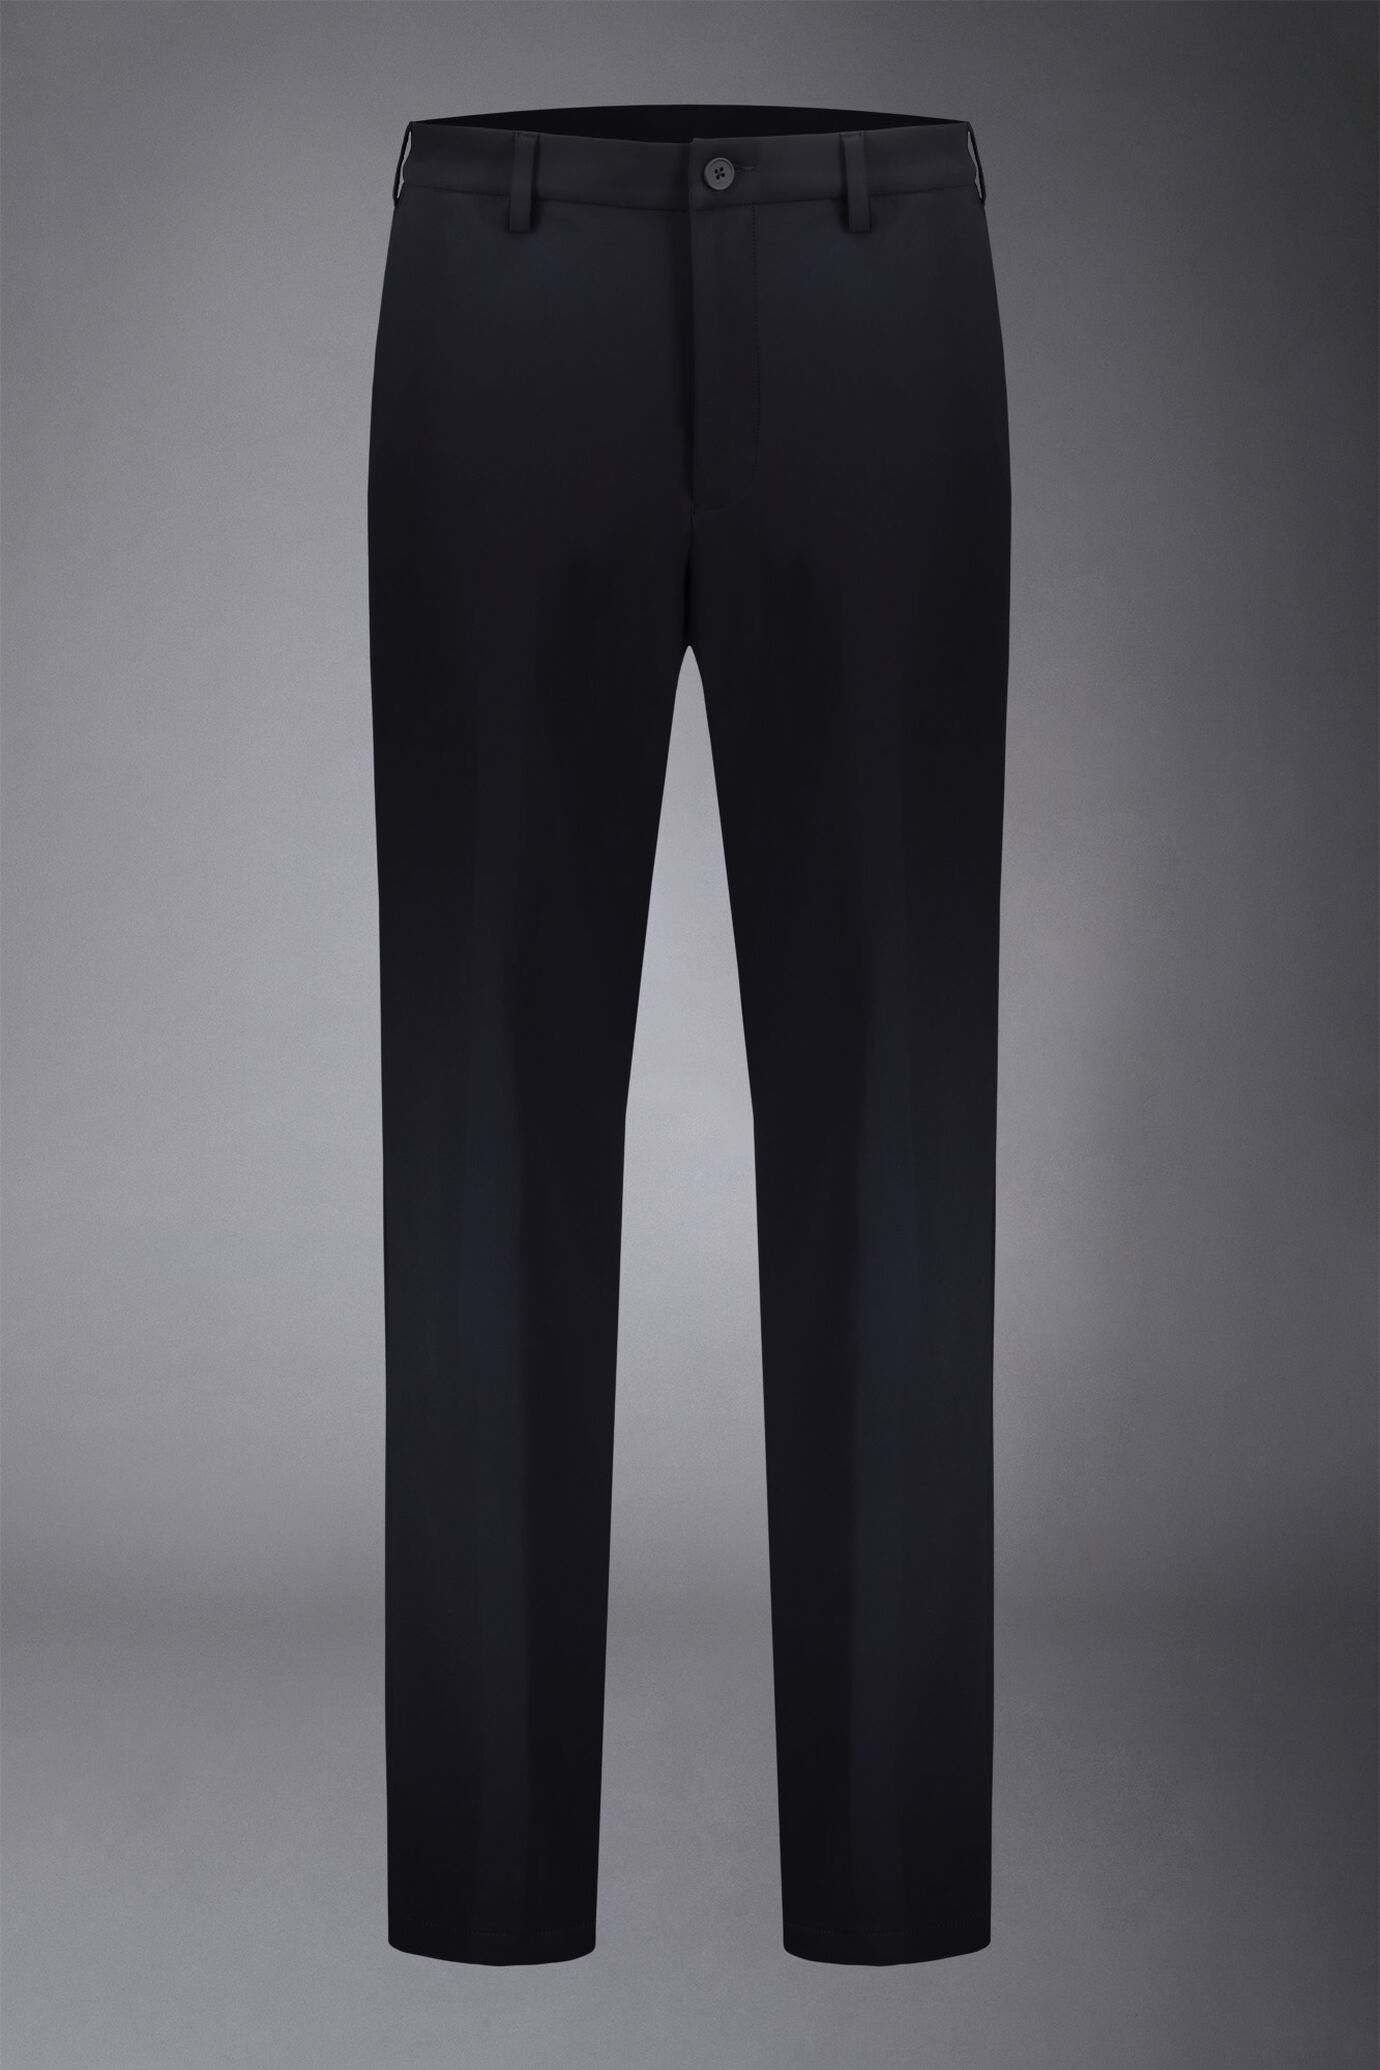 Pantalone chino uomo tessuto in nylon elasticizzato comfort fit image number 4